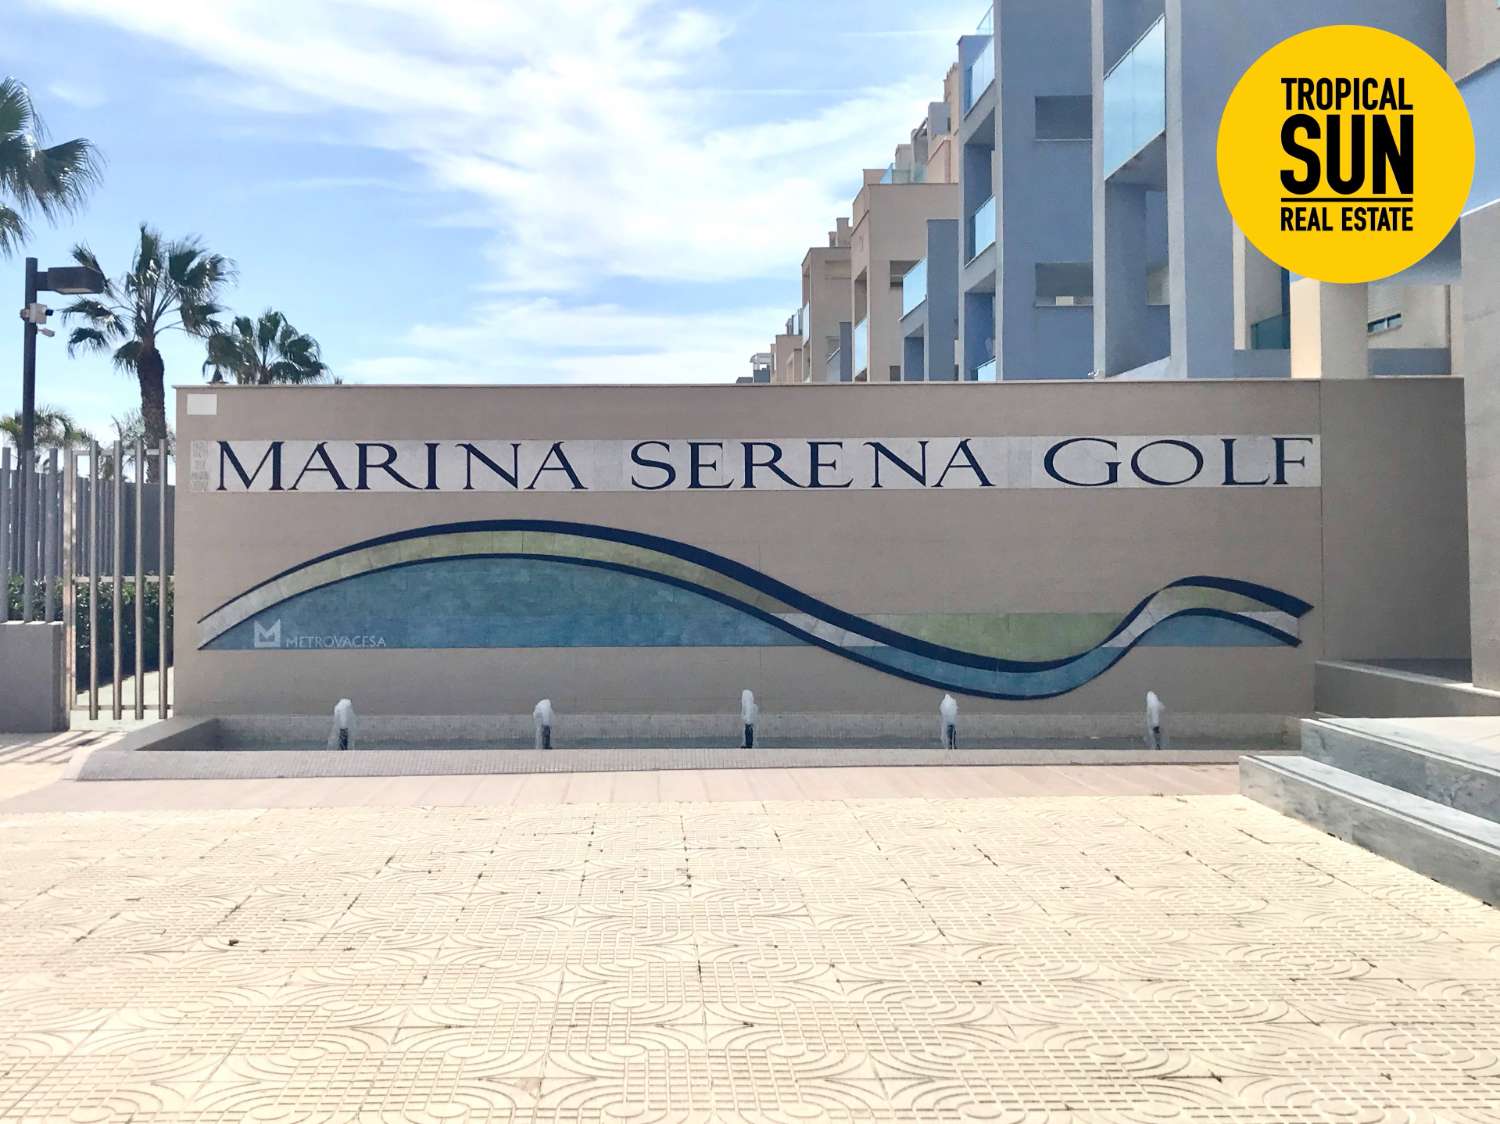 Urbanización Marina Serena Golf: el Lugar Perfecto para Vivir. Descubre este fantástico ático tipo duplex.